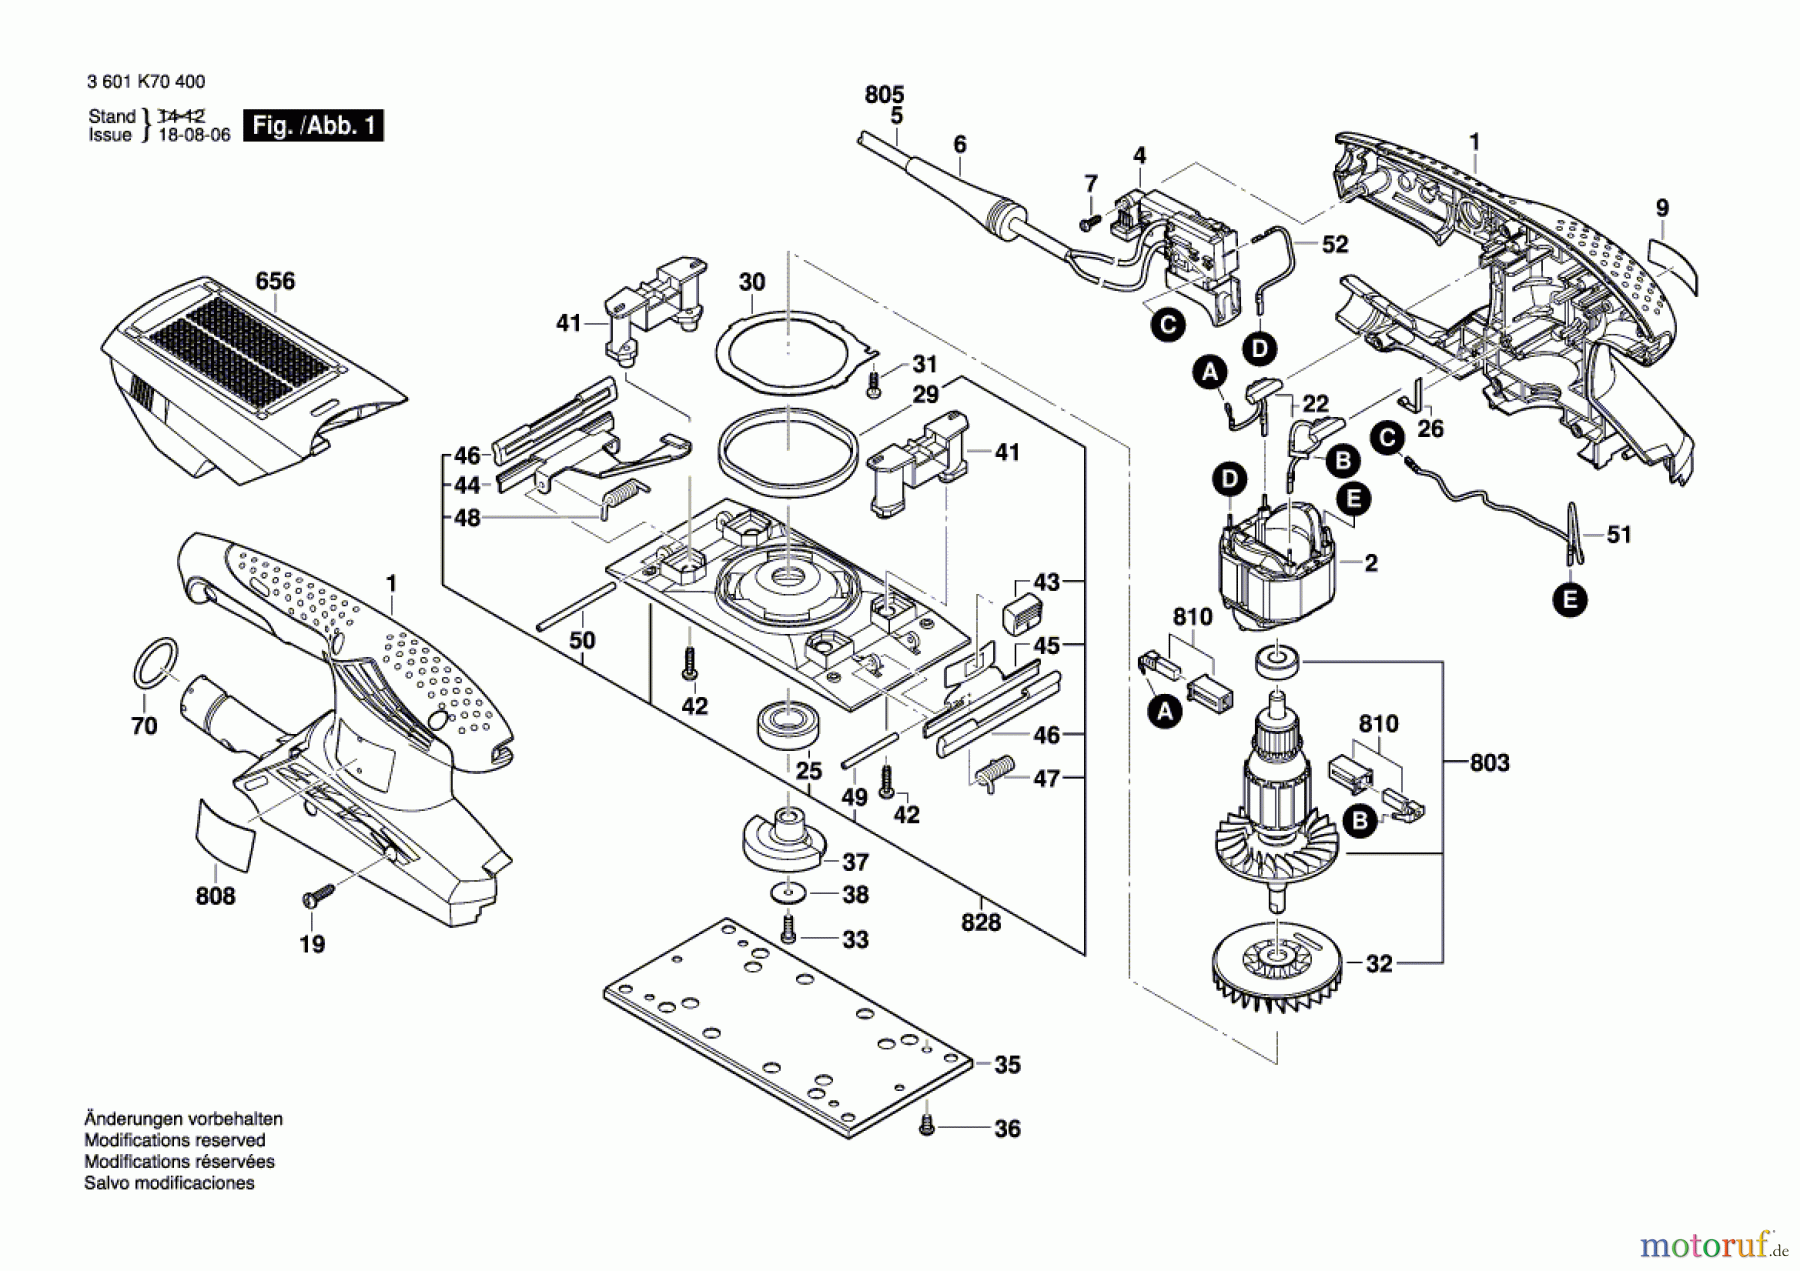  Bosch Werkzeug Schwingschleifer GSS 23 A Seite 1